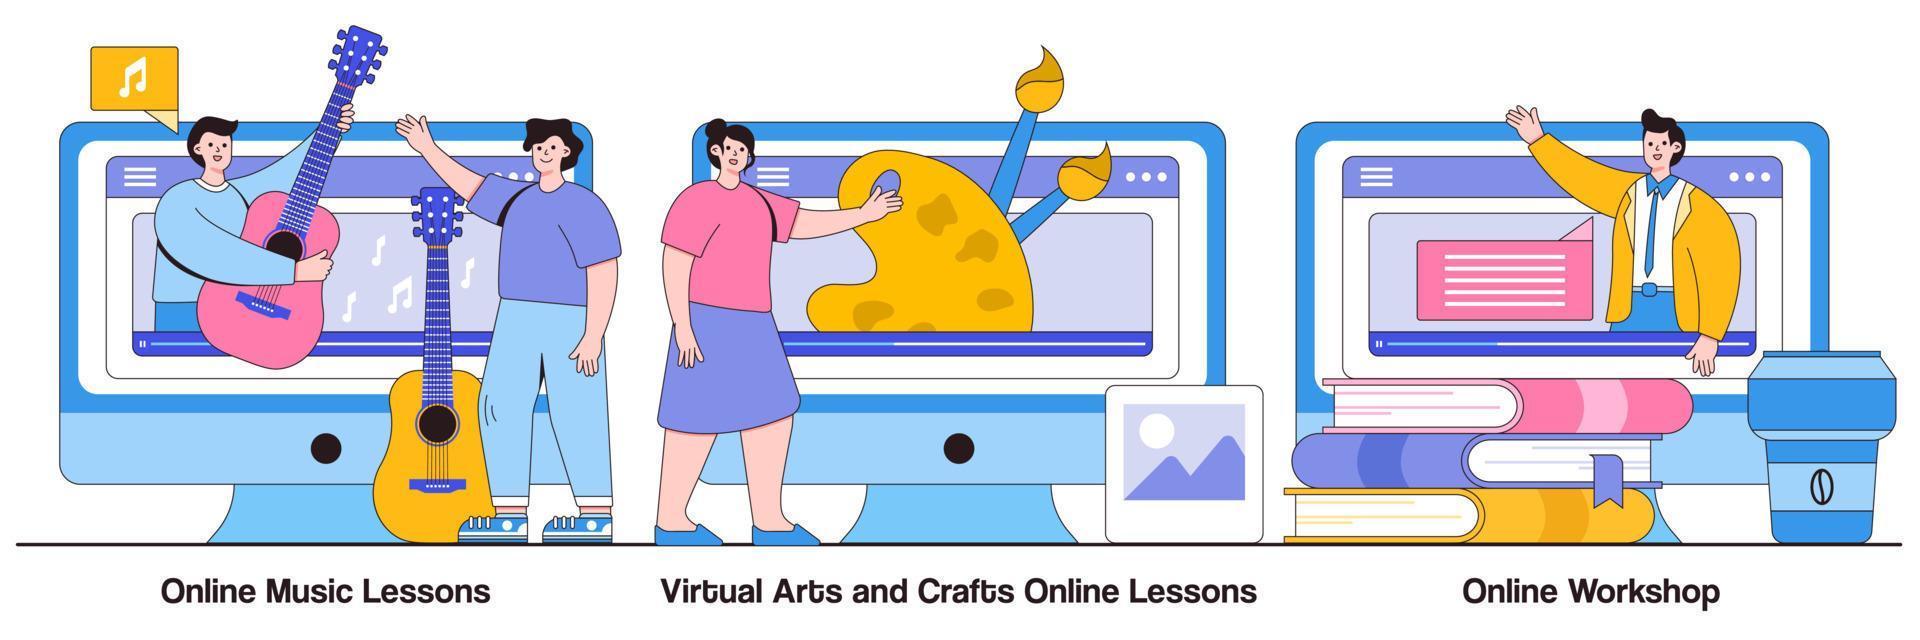 Online-Musikunterricht, Online-Unterricht für virtuelles Kunsthandwerk, Online-Workshop-Konzept mit Menschencharakter. Online-Bildung während des Vektorillustrationssatzes zur Selbstisolierung. kostenlose Meisterkurse vektor